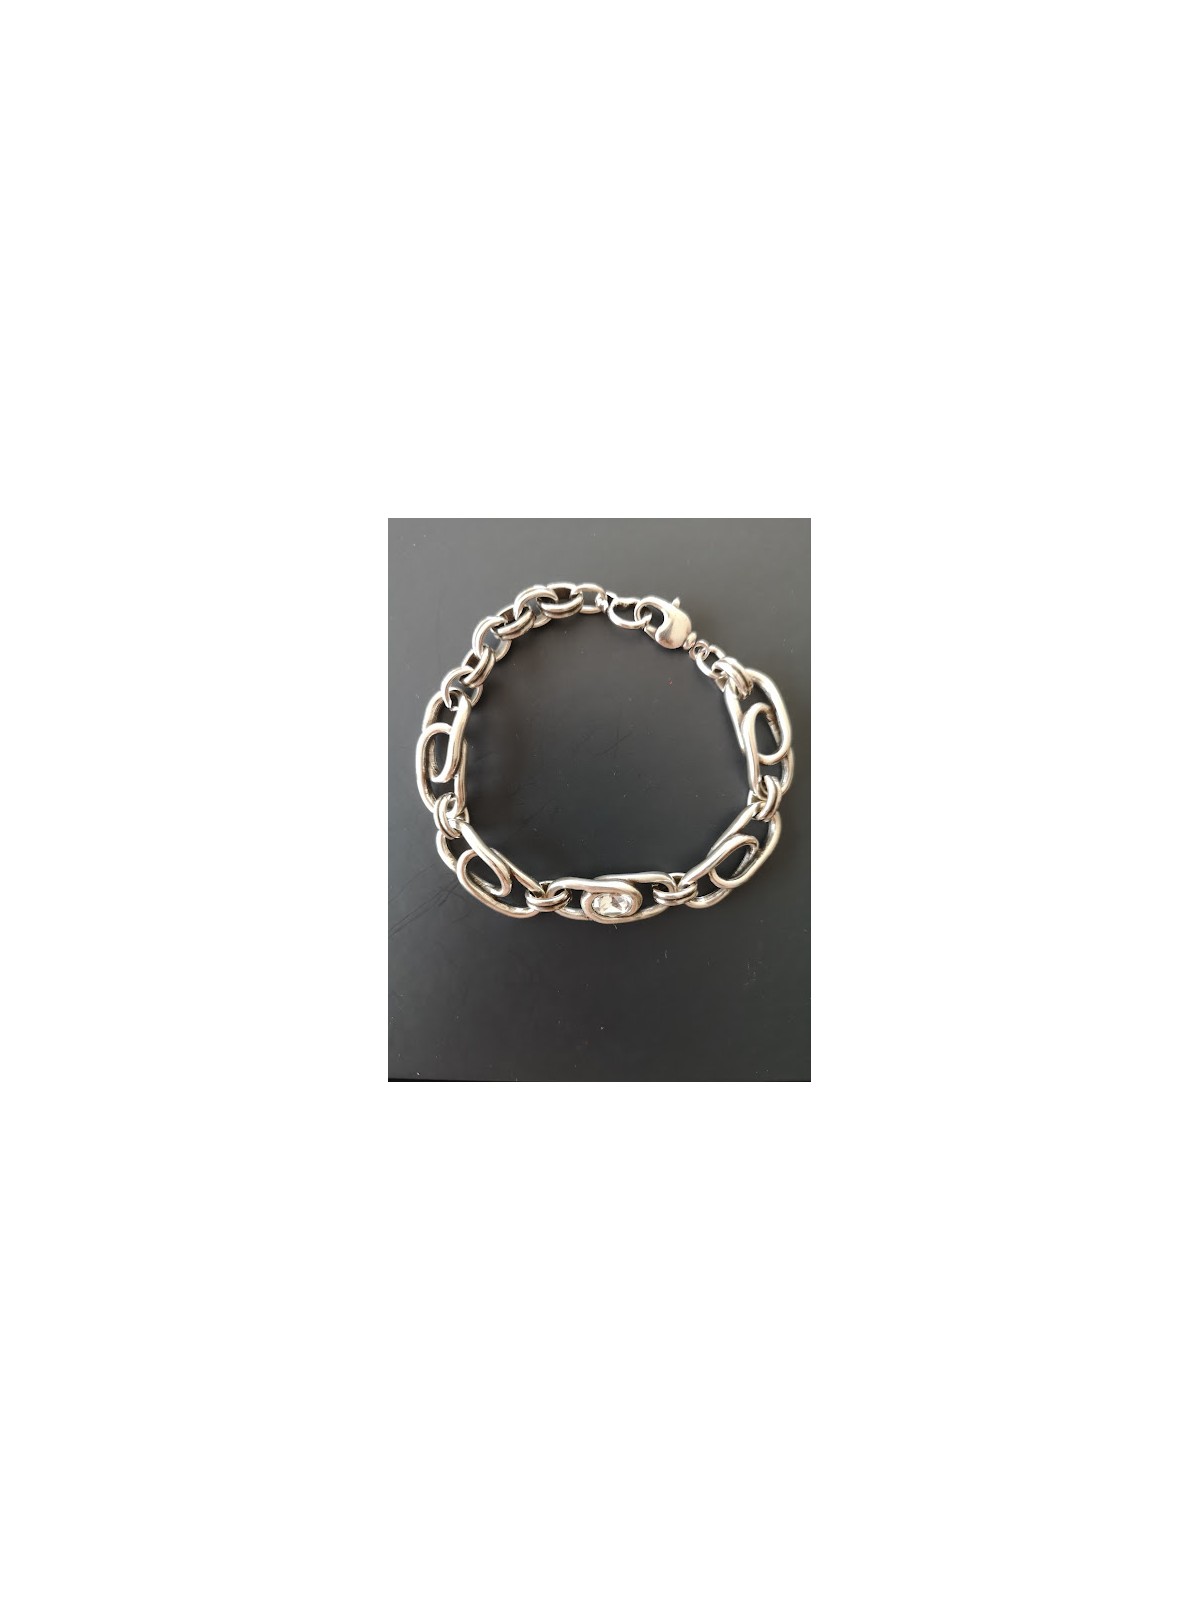 Bracelet Ciclon avec fermoir mousqueton | 3 vue de haut | Tilleulmenthe boutique de mode femme en ligne